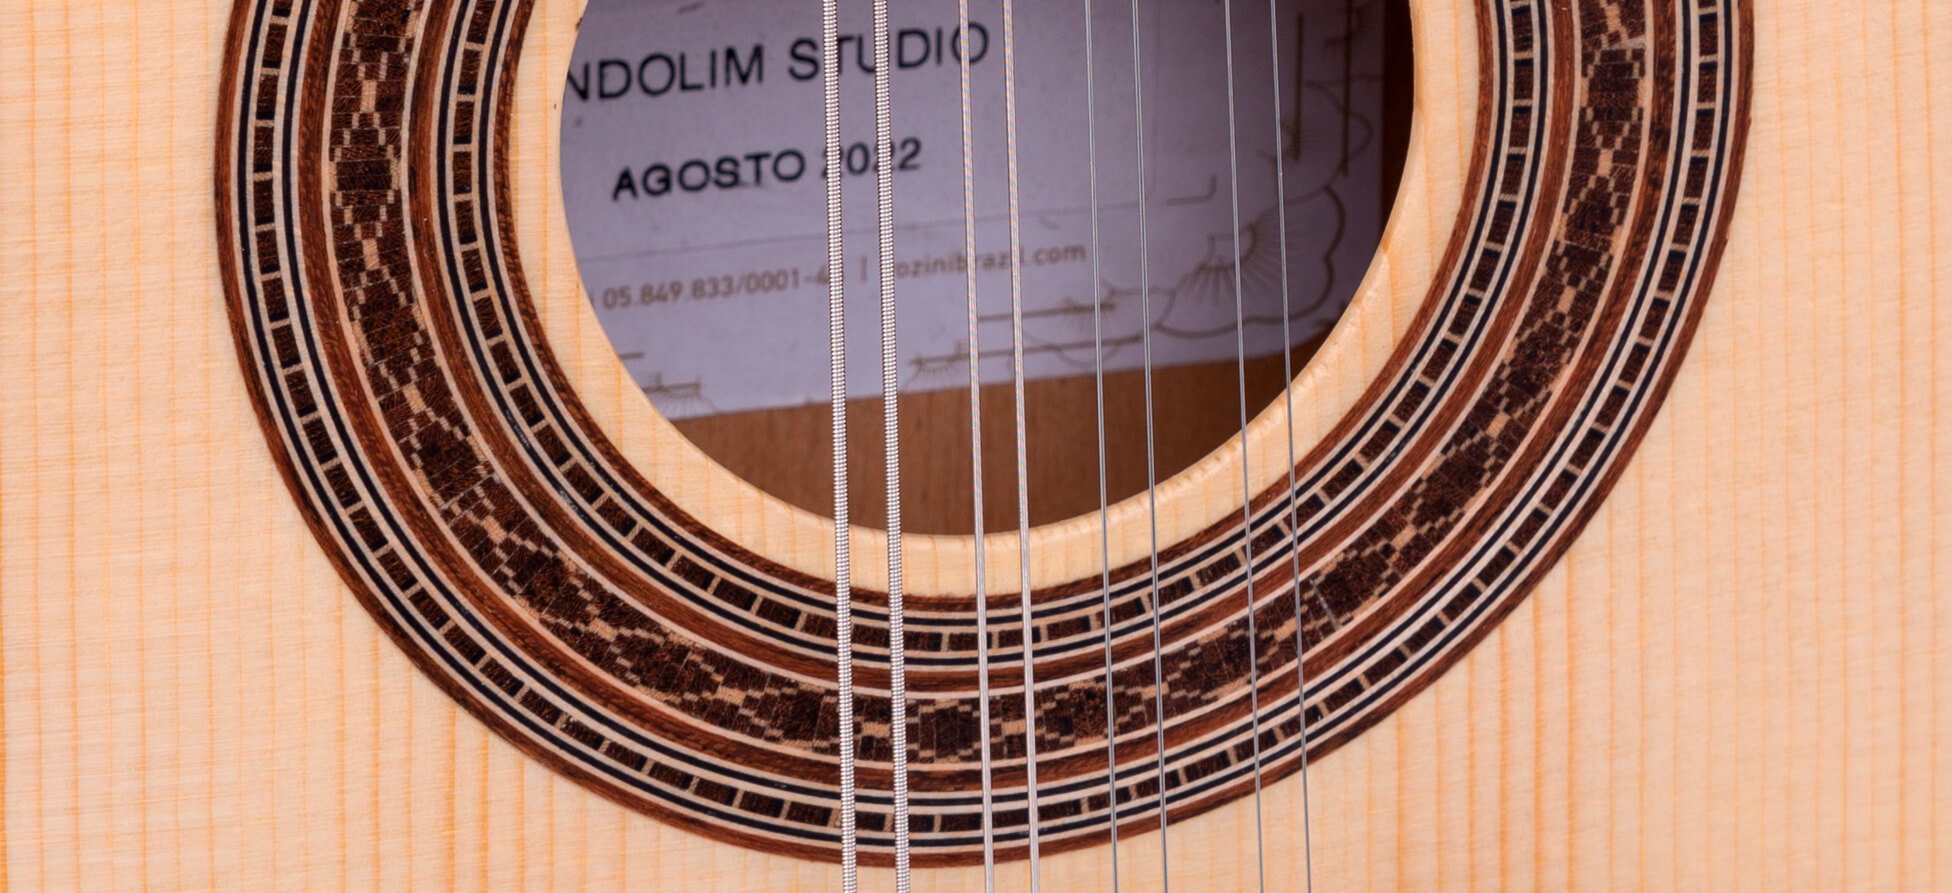 BANDOLIM STUDIO FOSCO ACÚSTICO | RB10.AC.F.LP - Bandolins Elétricos | Rozini Instrumentos Musicais | 100% Brasileira